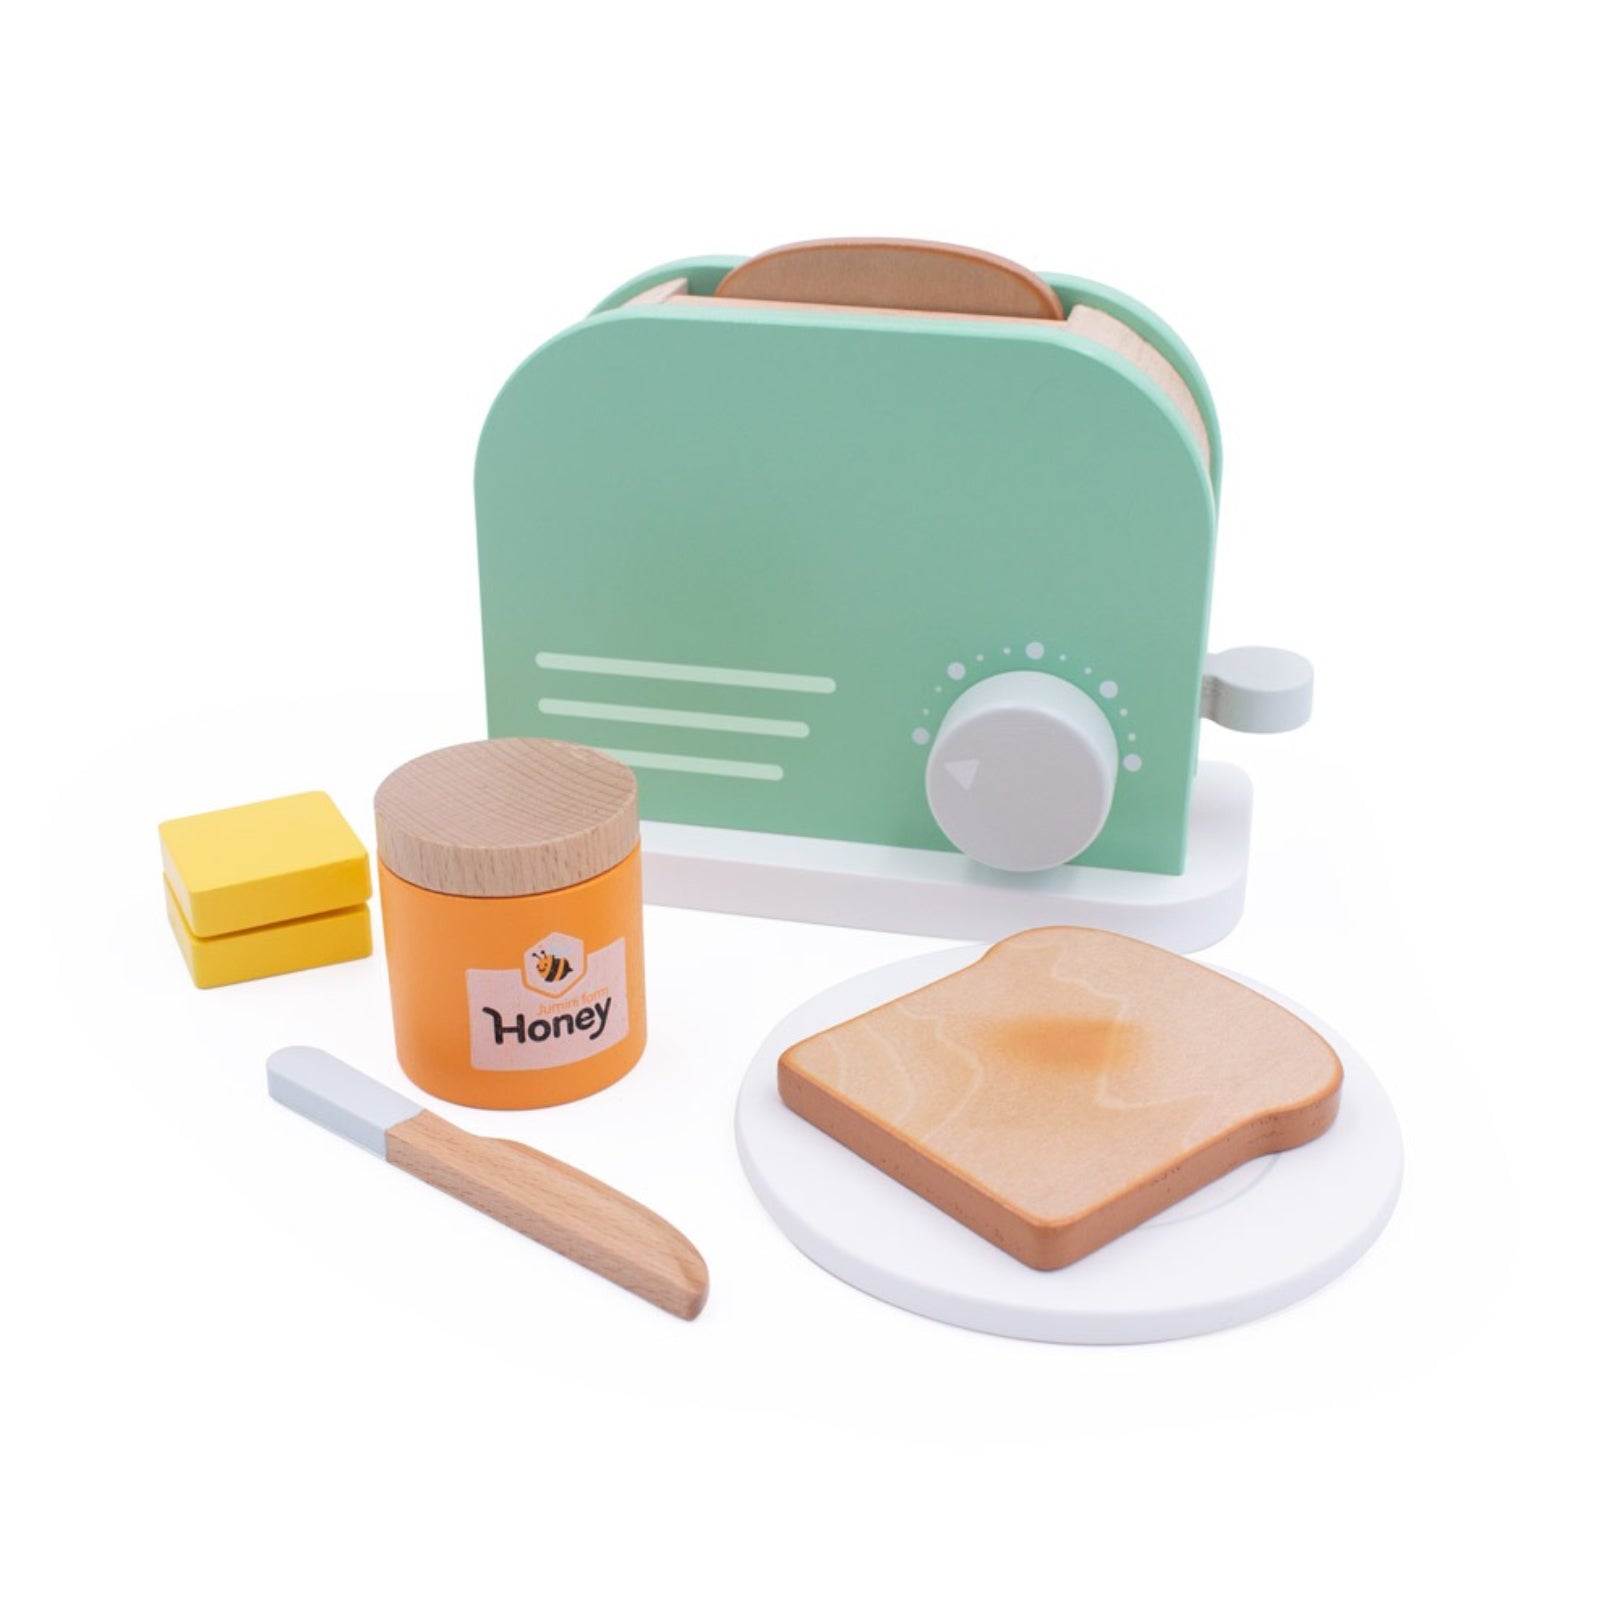 Jumini Wooden Play Toaster Set